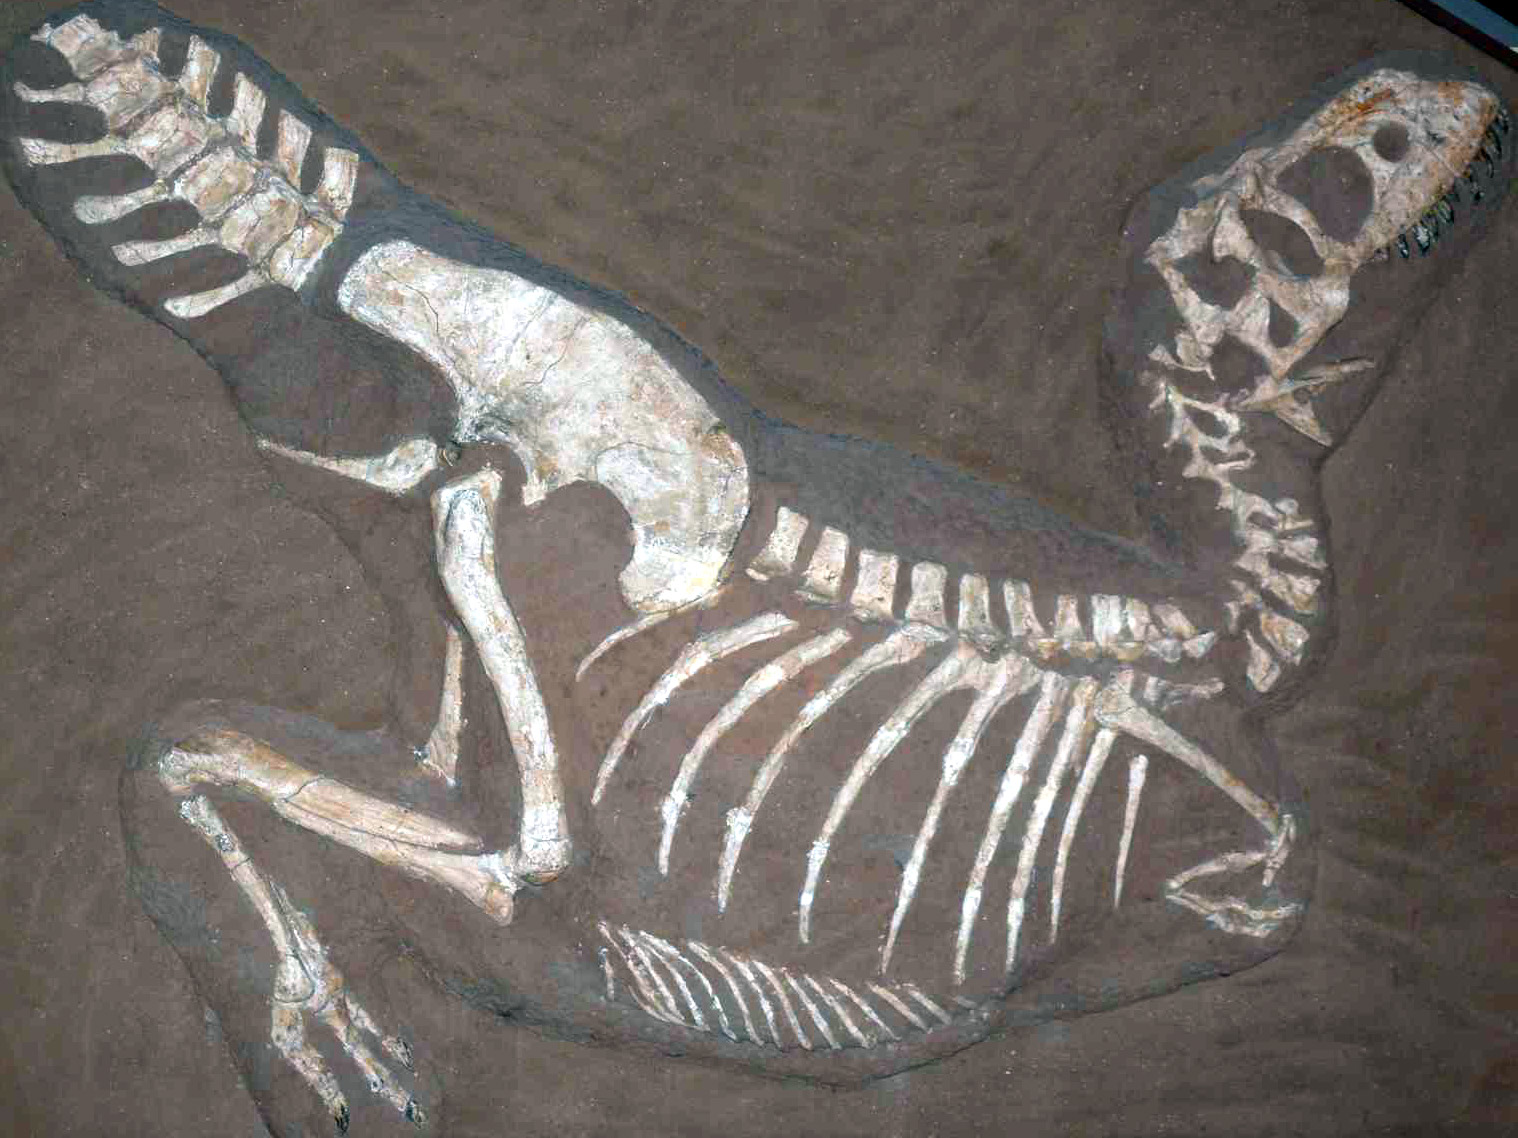 Velmi dobře zachovaná kostra tarbosaura (exemplář PIN 553-1), která je zároveň holotypem dnes již neplatného druhu Gorgosaurus lancinator. V současnosti známe již přes třicet fosilních exemplářů tarbosaura, mnohé z nich ve skvělém stavu dochování a v